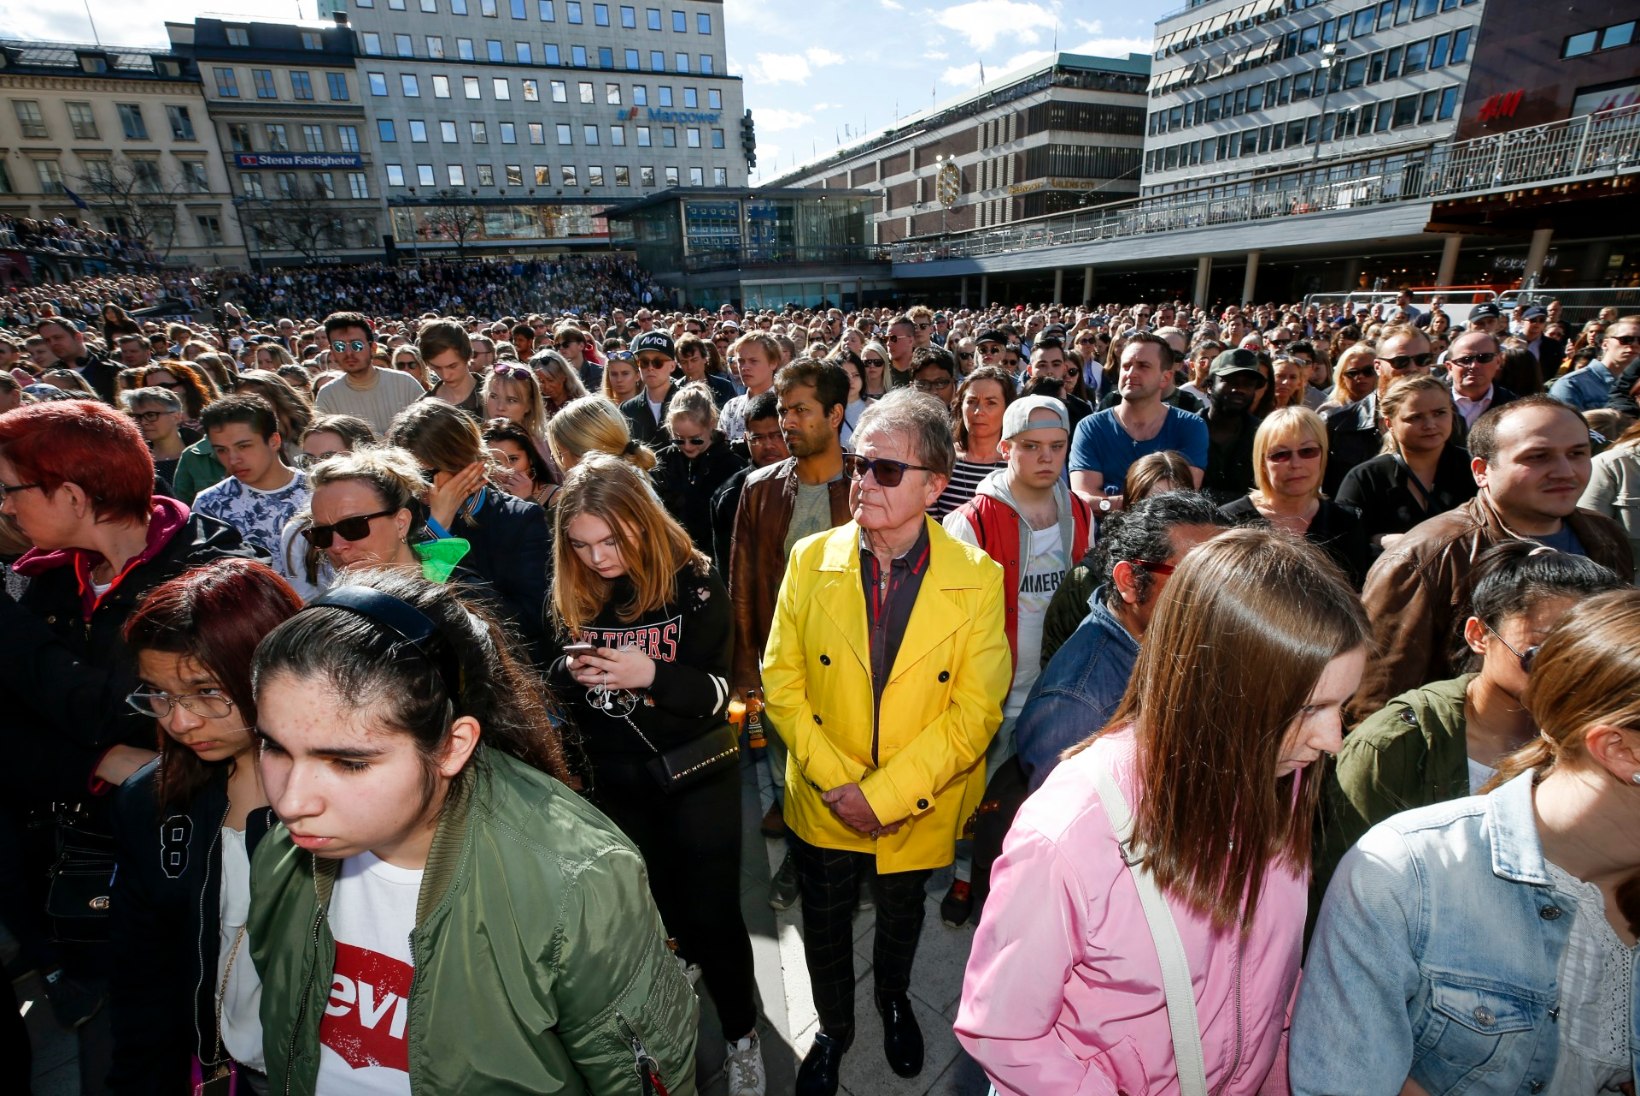 FOTOD JA VIDEO | Tuhanded Avicii fännid on kogunenud Stockholmi südalinna